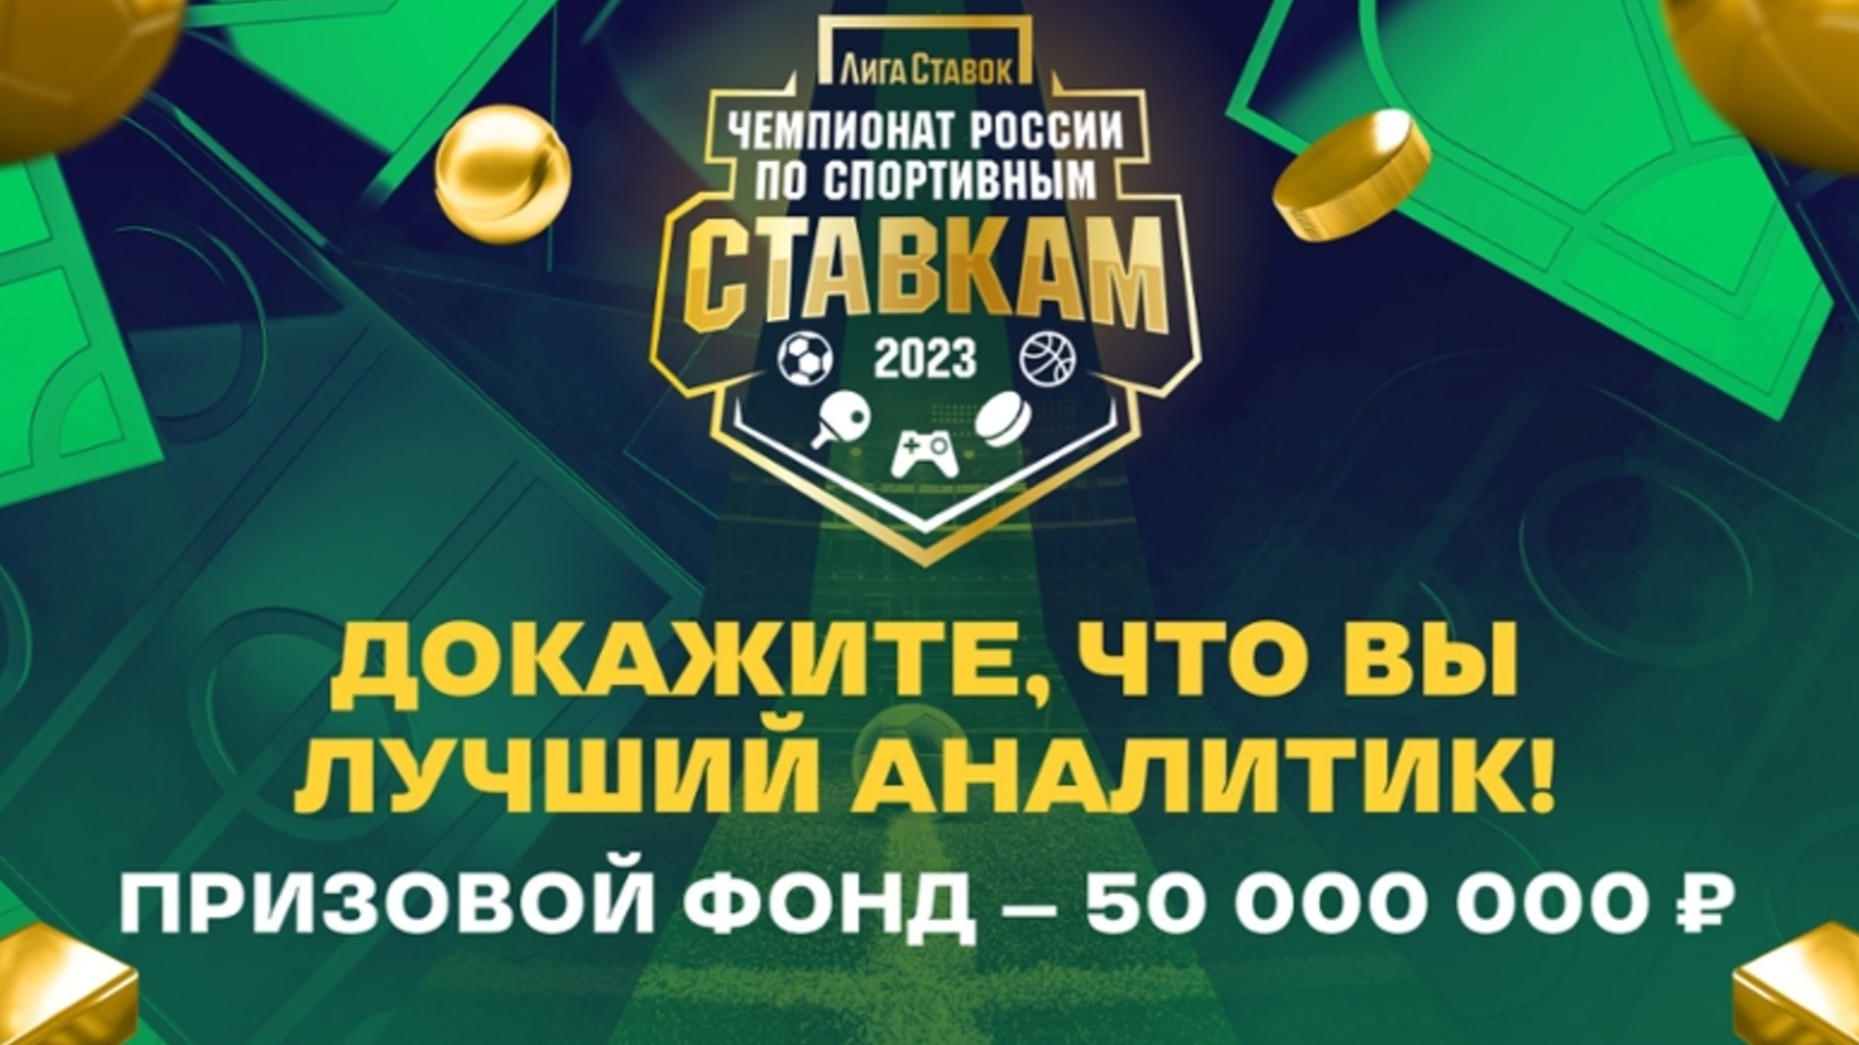 «Лига Ставок» проводит розыгрыш 50 миллионов рублей